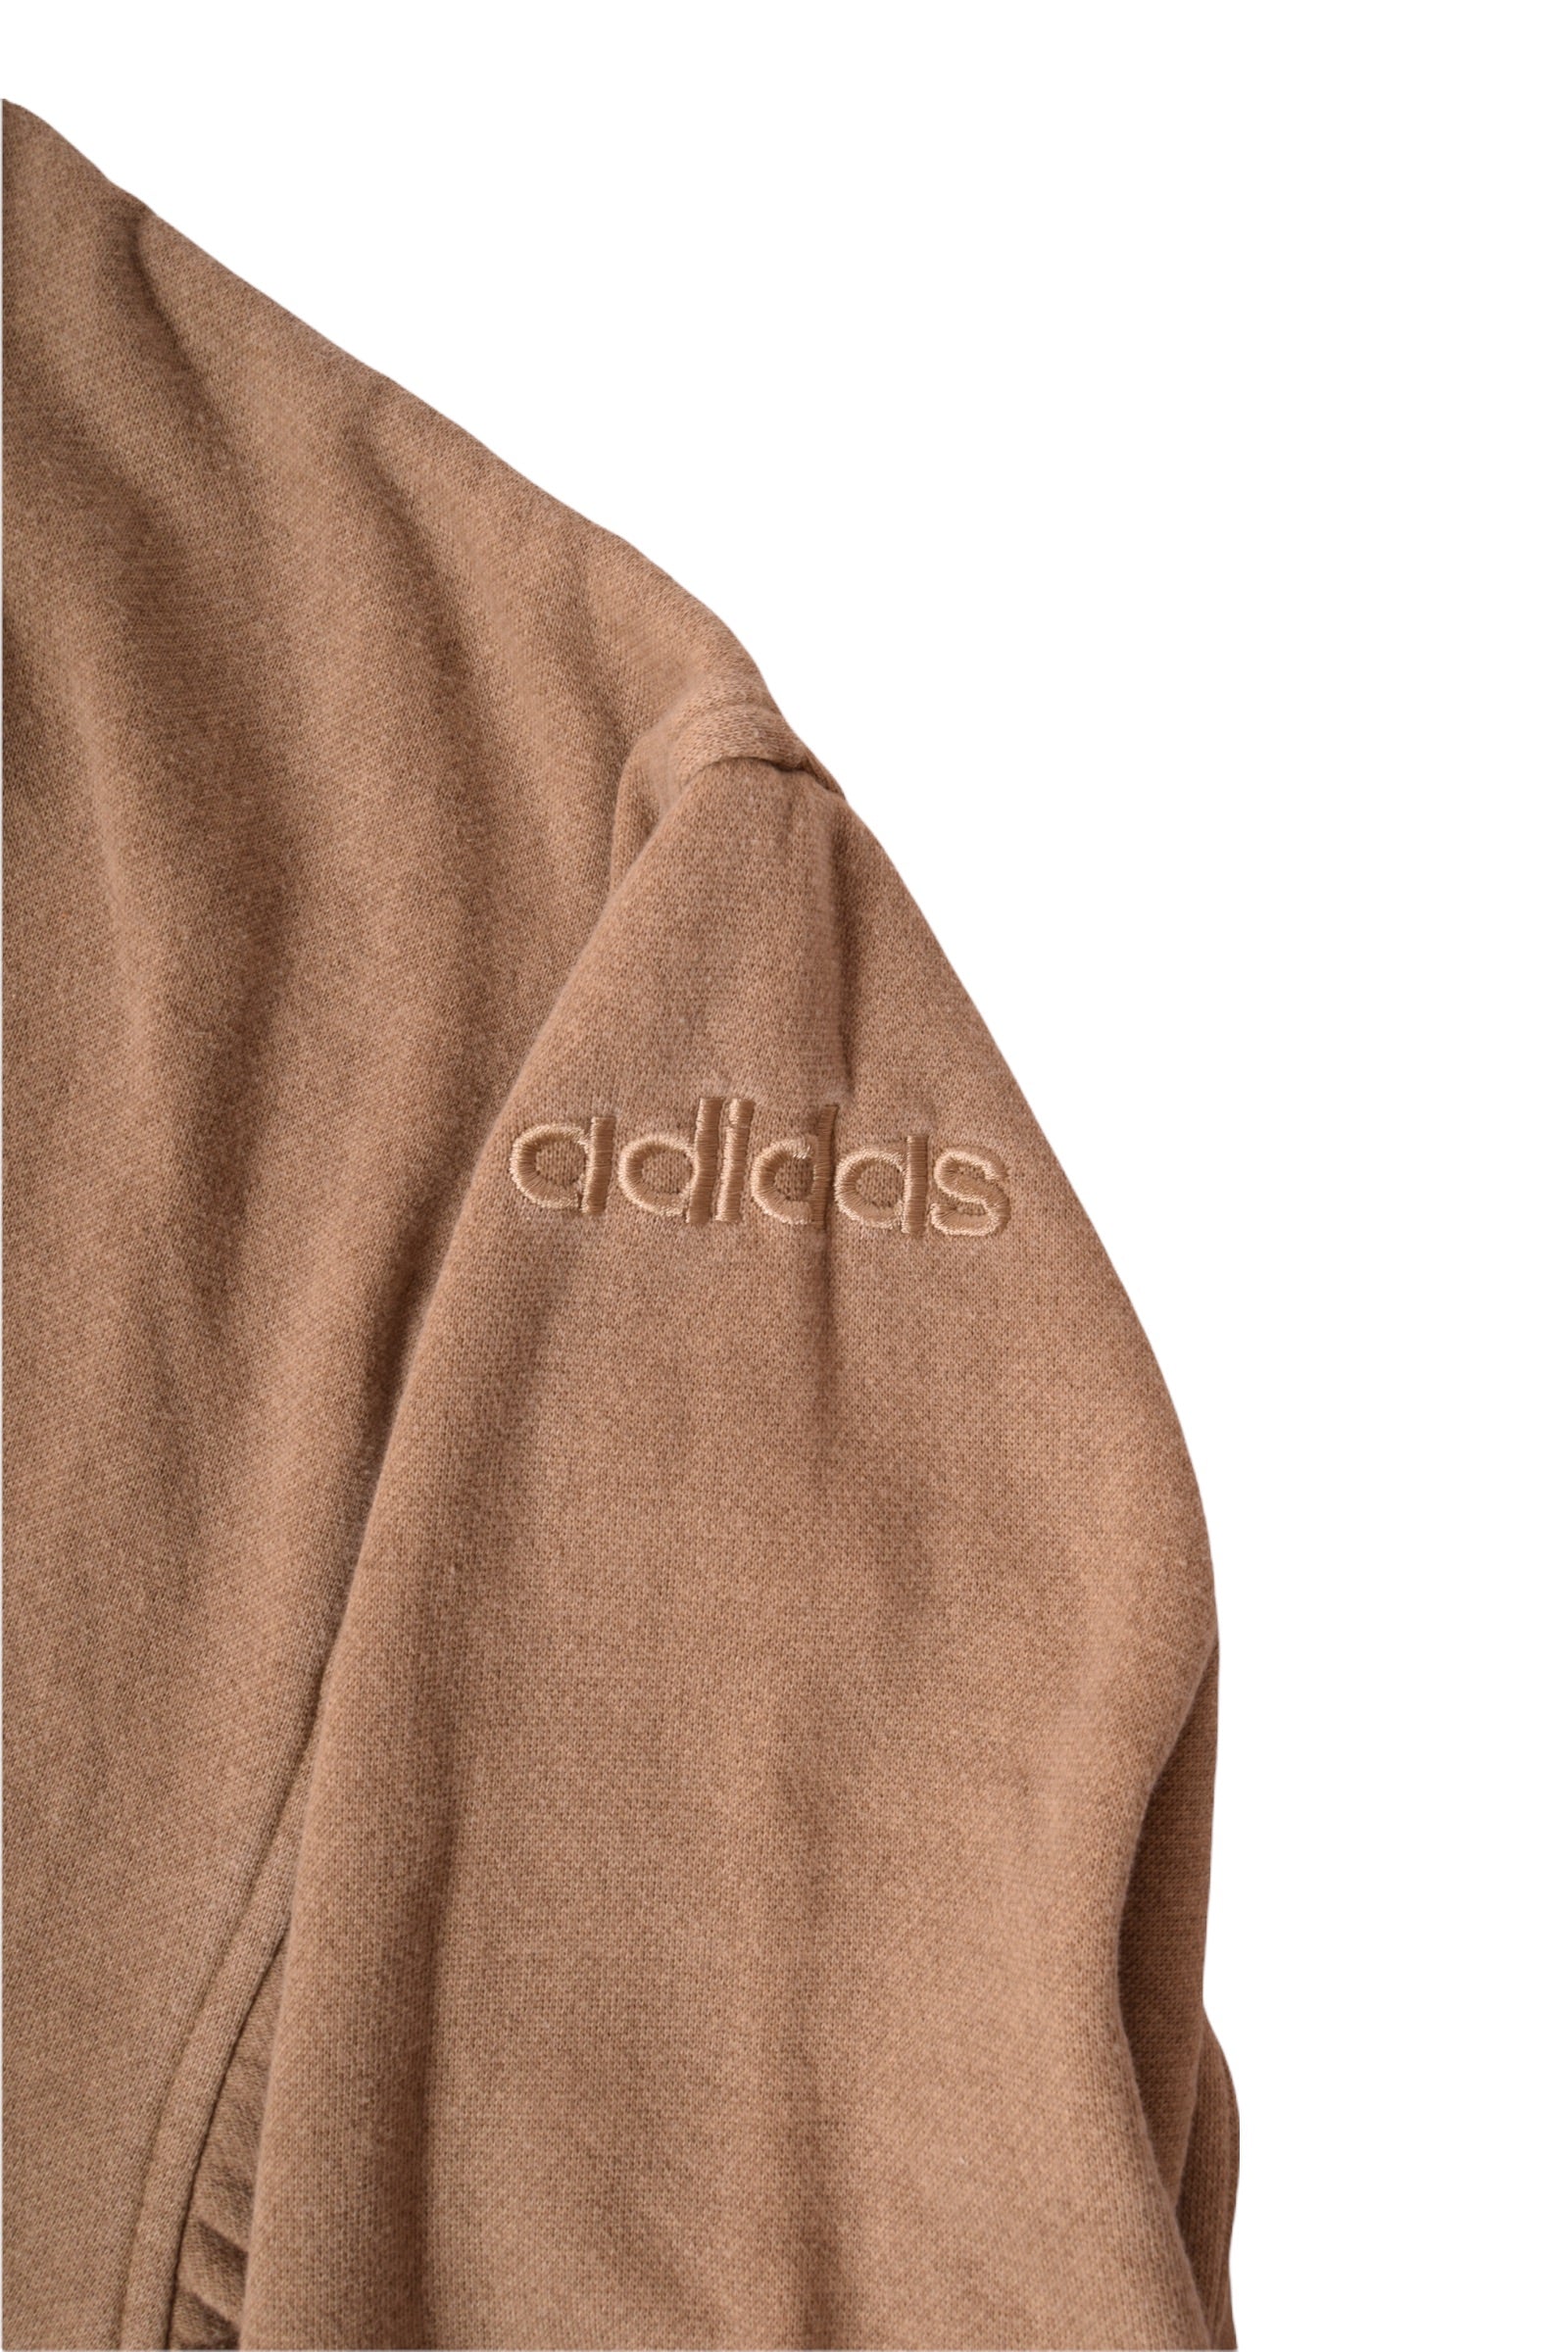 Vintage 90's Adidas Sweatshirt Crew Neck Brown Size XL-XXL